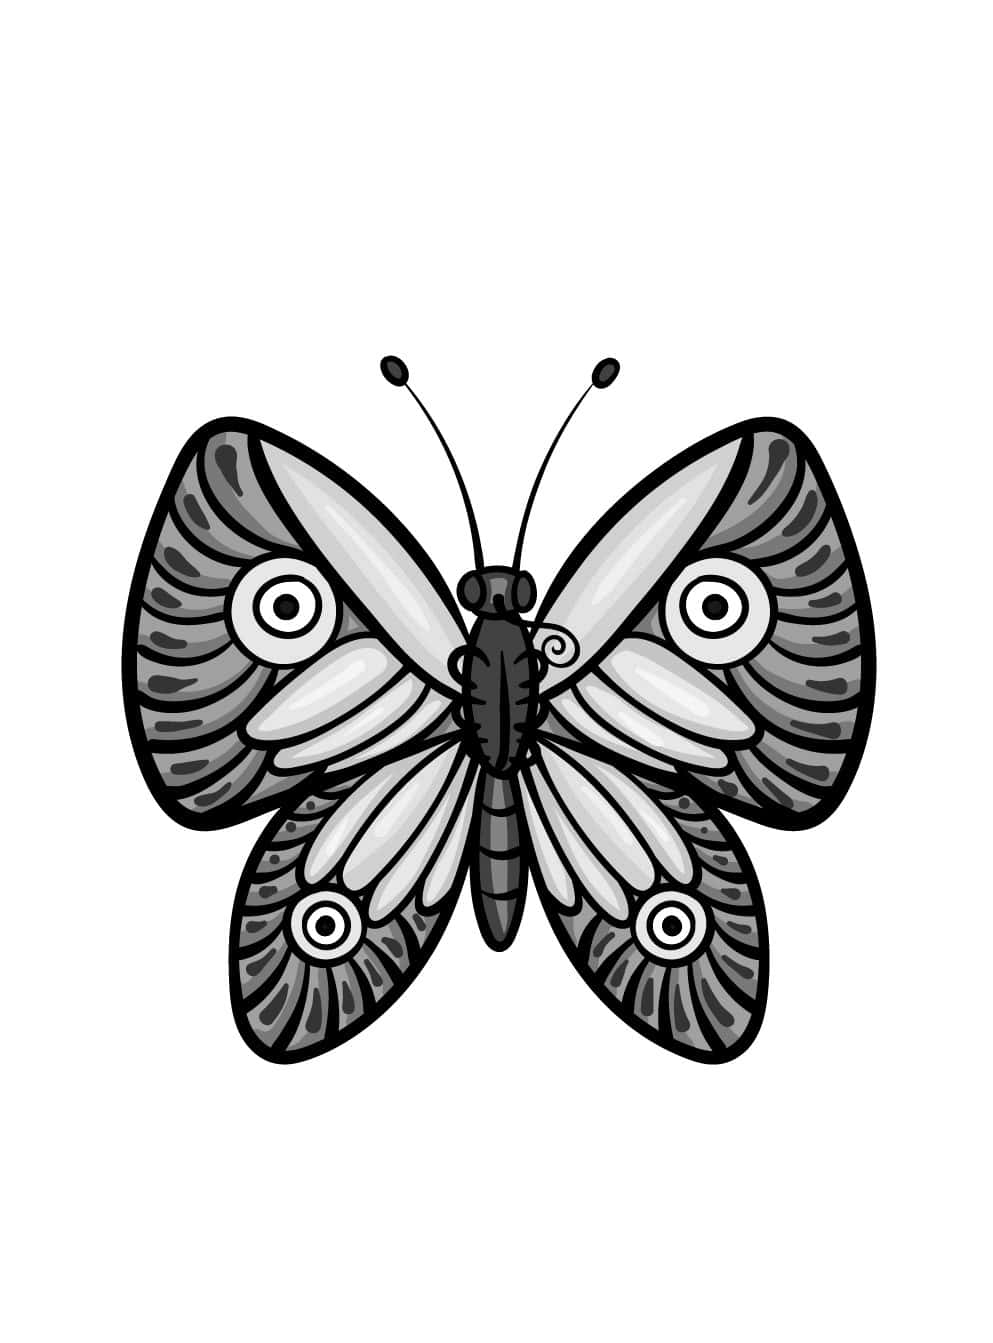 Zeichneeinfache Schmetterlingsskizzen-bilder